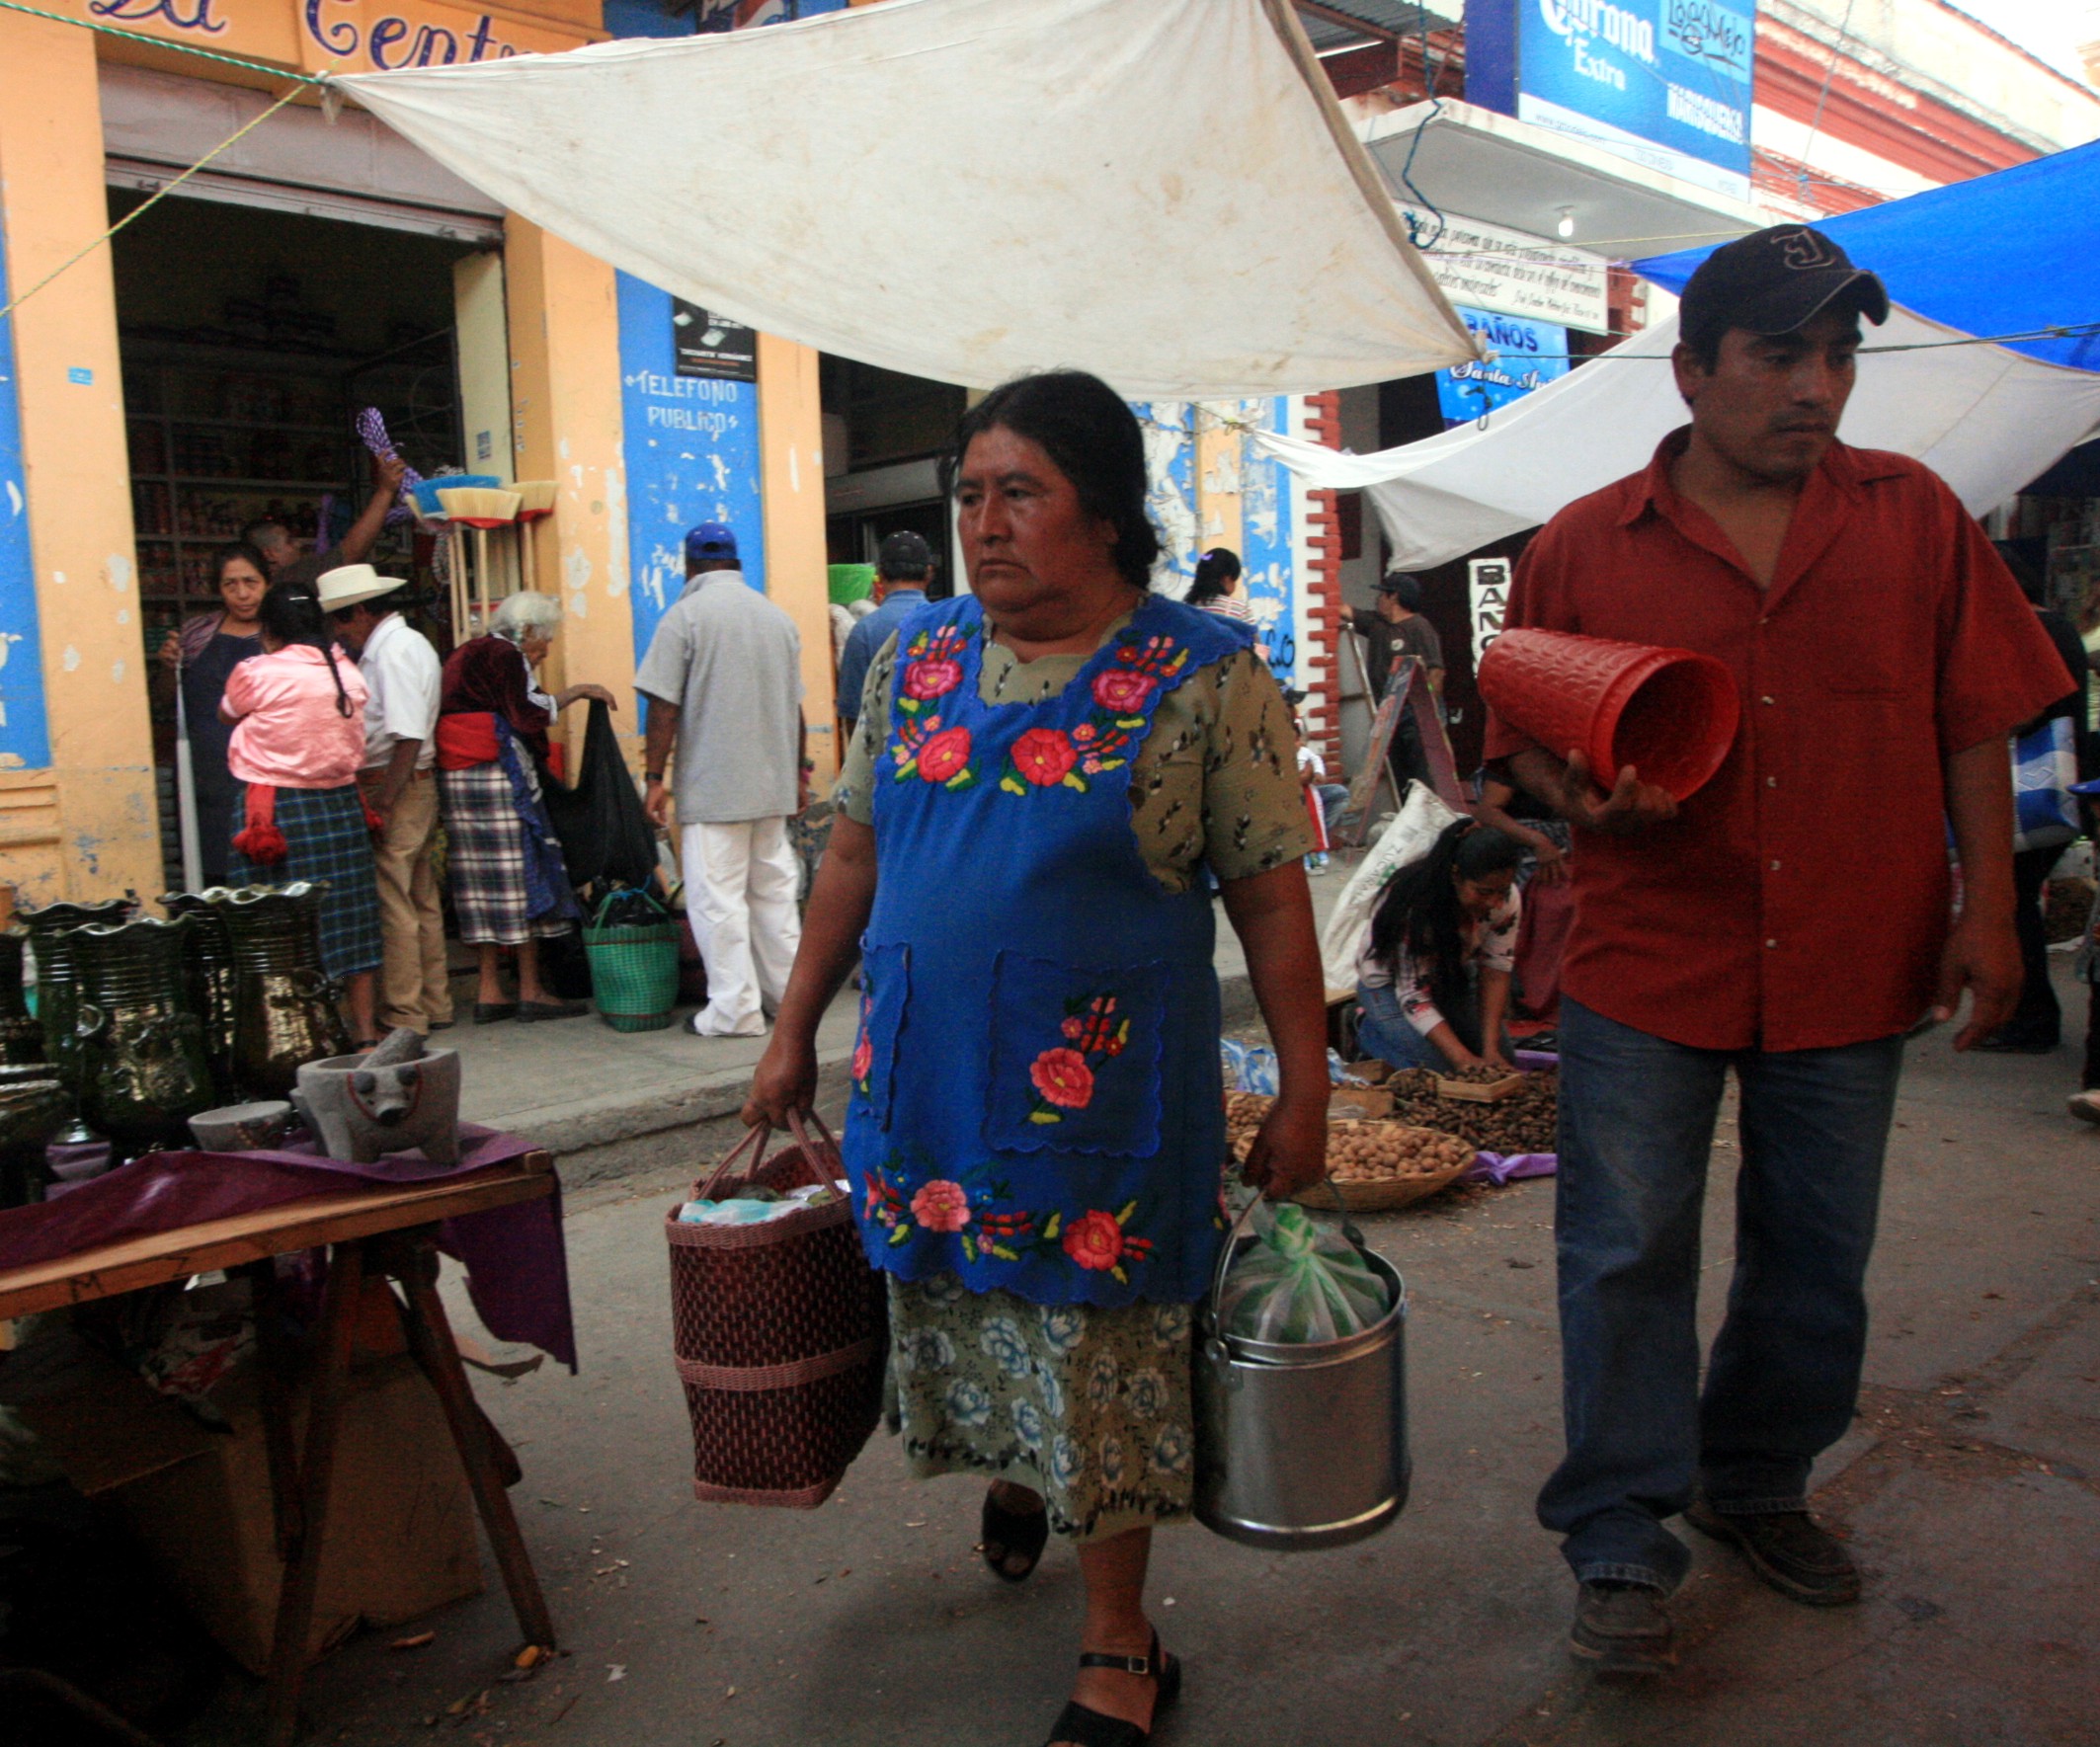 Mercado del dia de muertos en Tlacolula, Comparsa